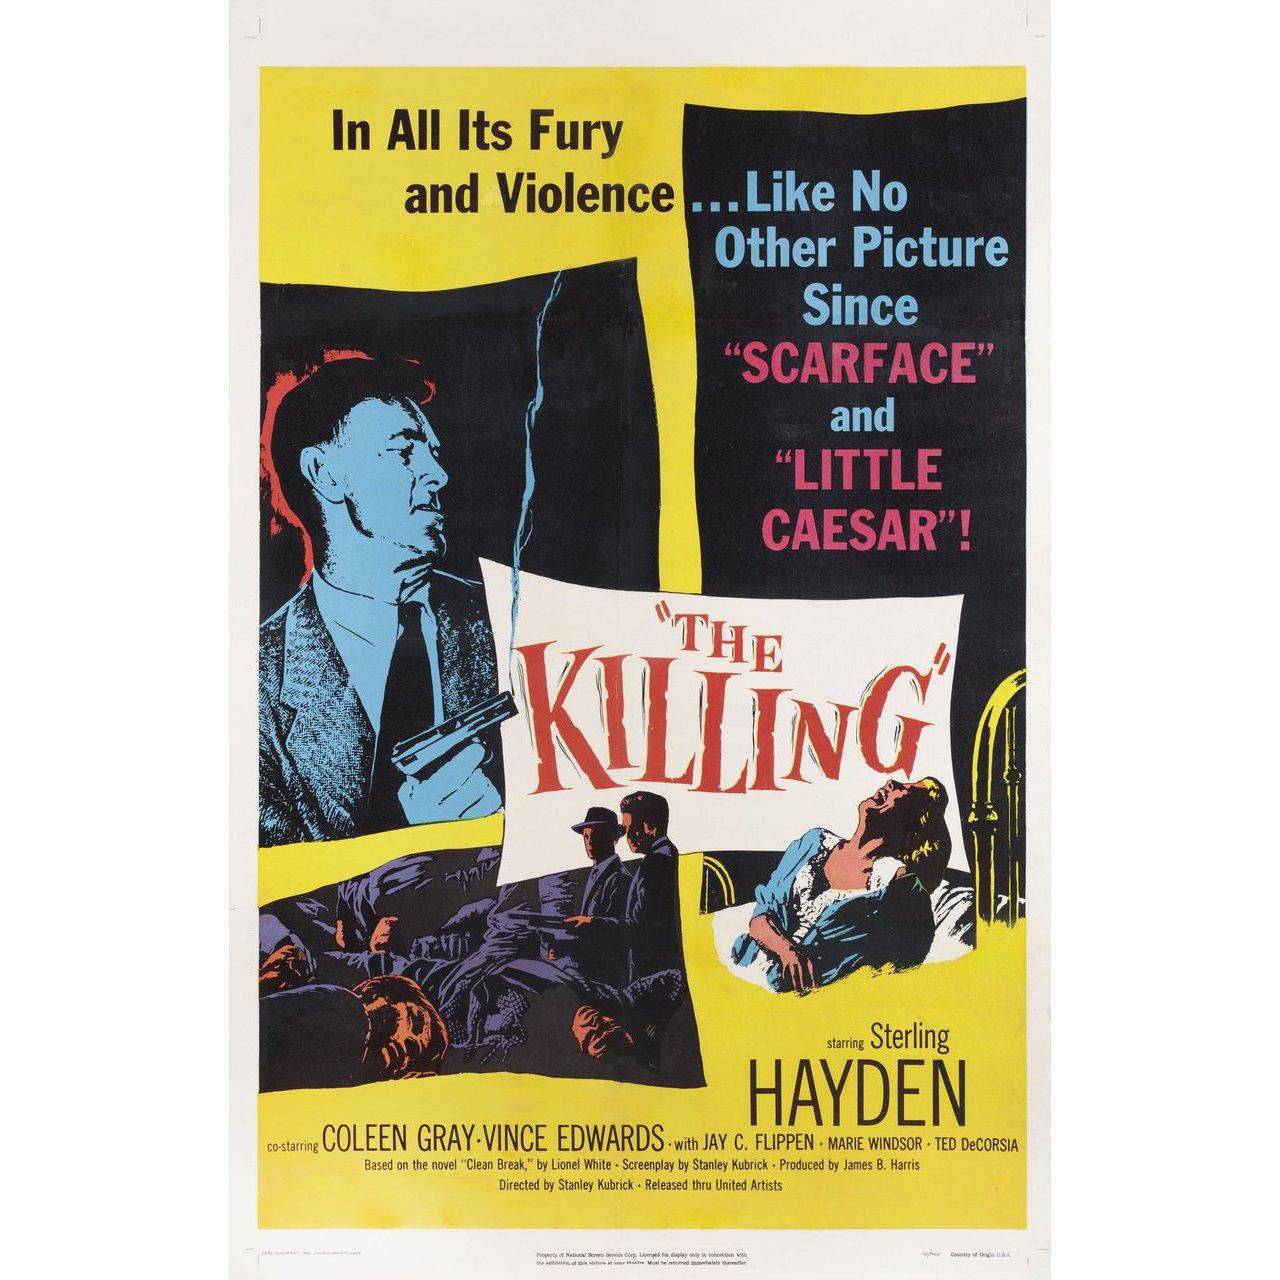 Affiche originale de 1956 pour le film The Killing réalisé par Stanley Kubrick avec Sterling Hayden / Coleen Gray / Vince Edwards / A.C. Flippen. En bon état, avec un dos en lin. Cette affiche a été professionnellement doublée de lin. Veuillez noter